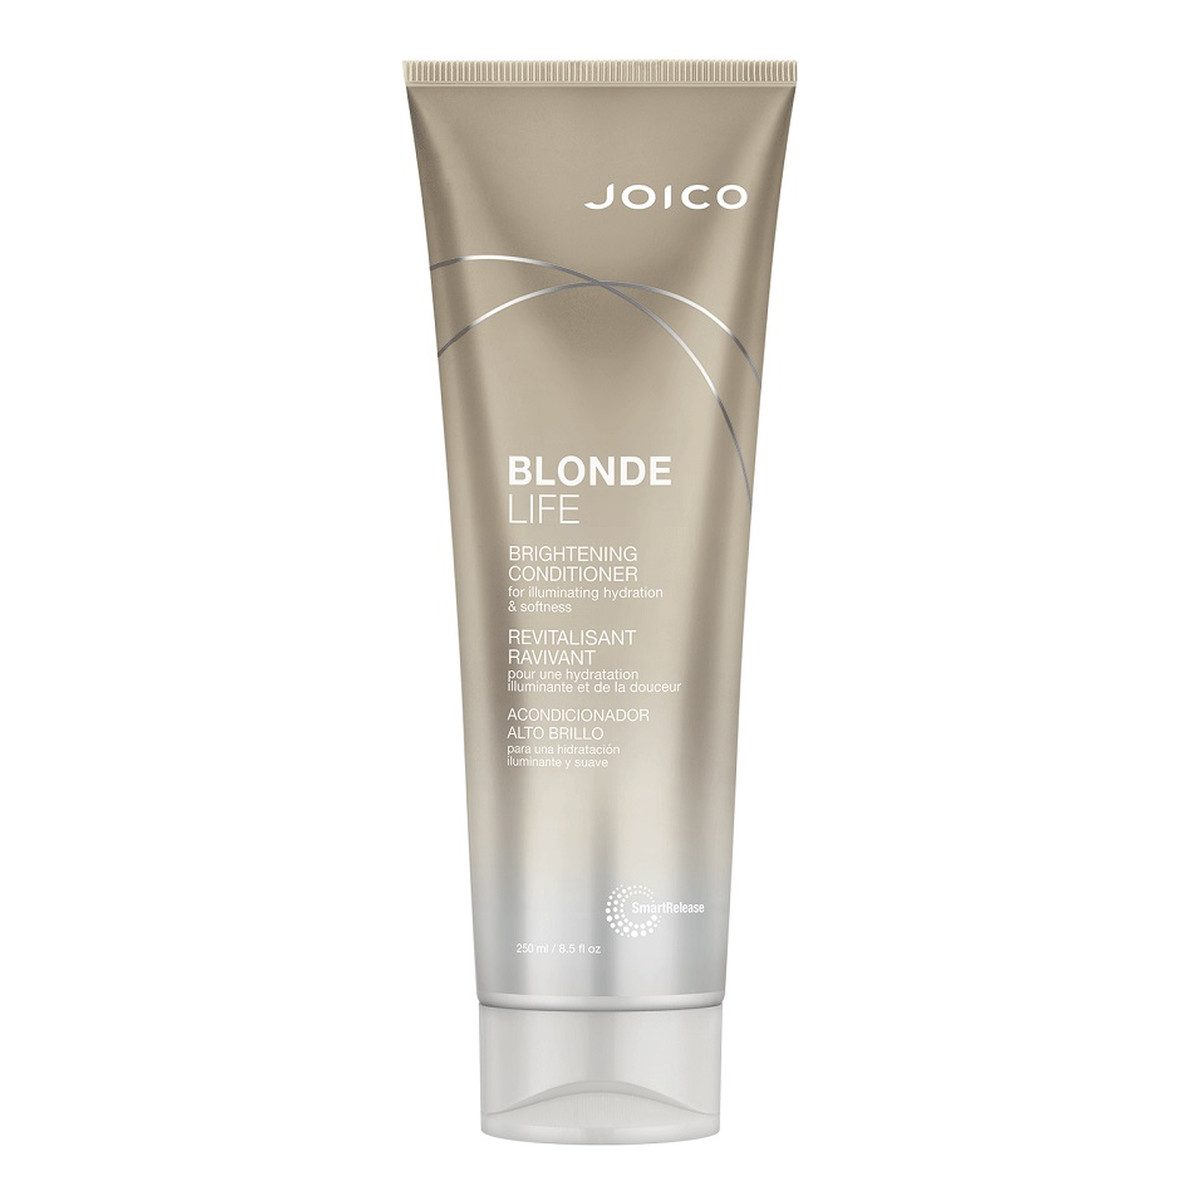 Joico Blonde life brightening conditioner odżywka do włosów blond 250ml